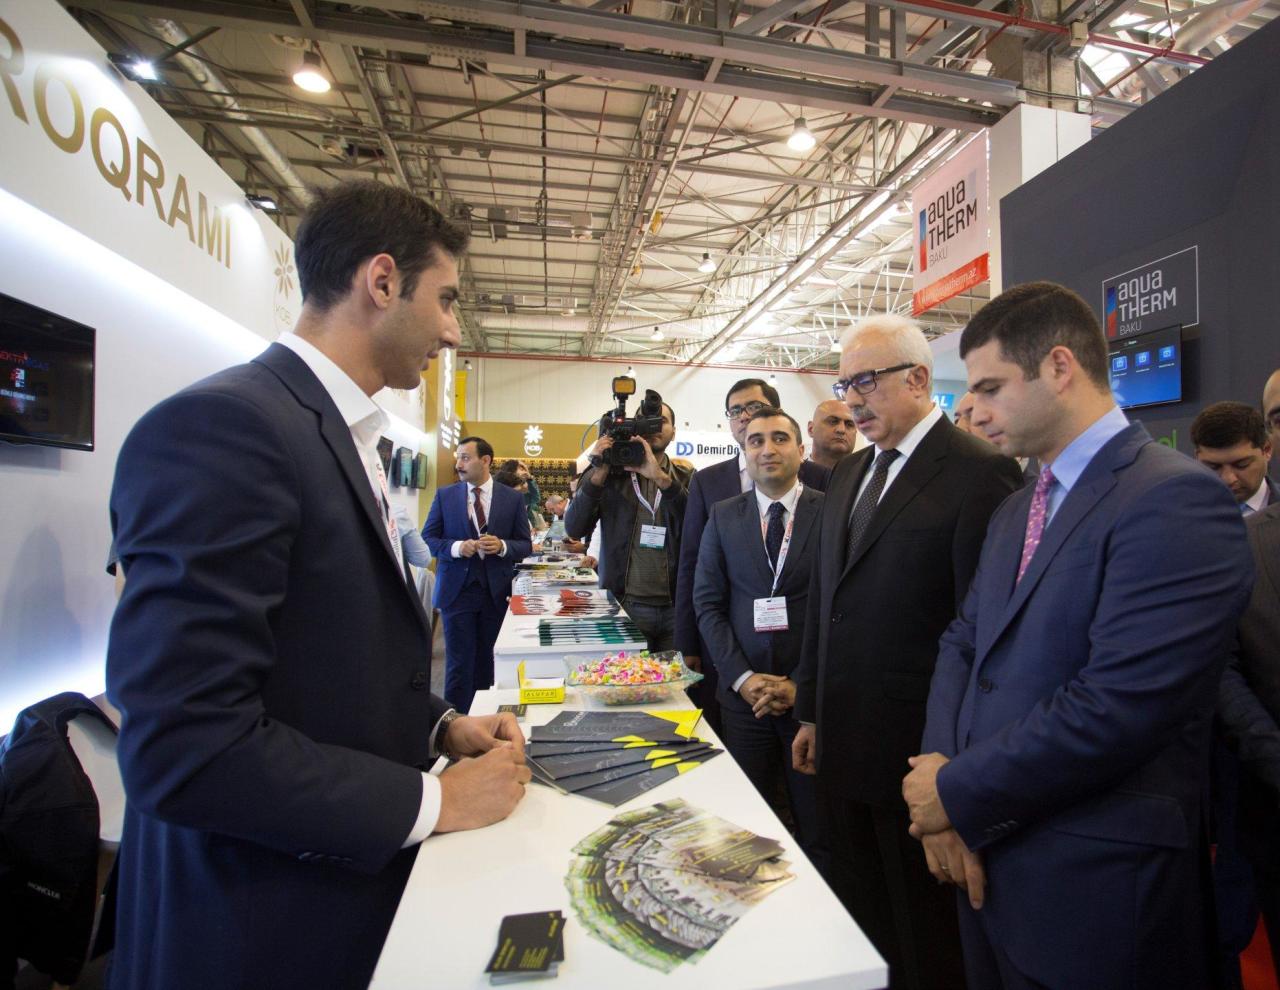 На выставке "Baku Build 2019" субъекты МСБ демонстрируют свою продукцию и услуги